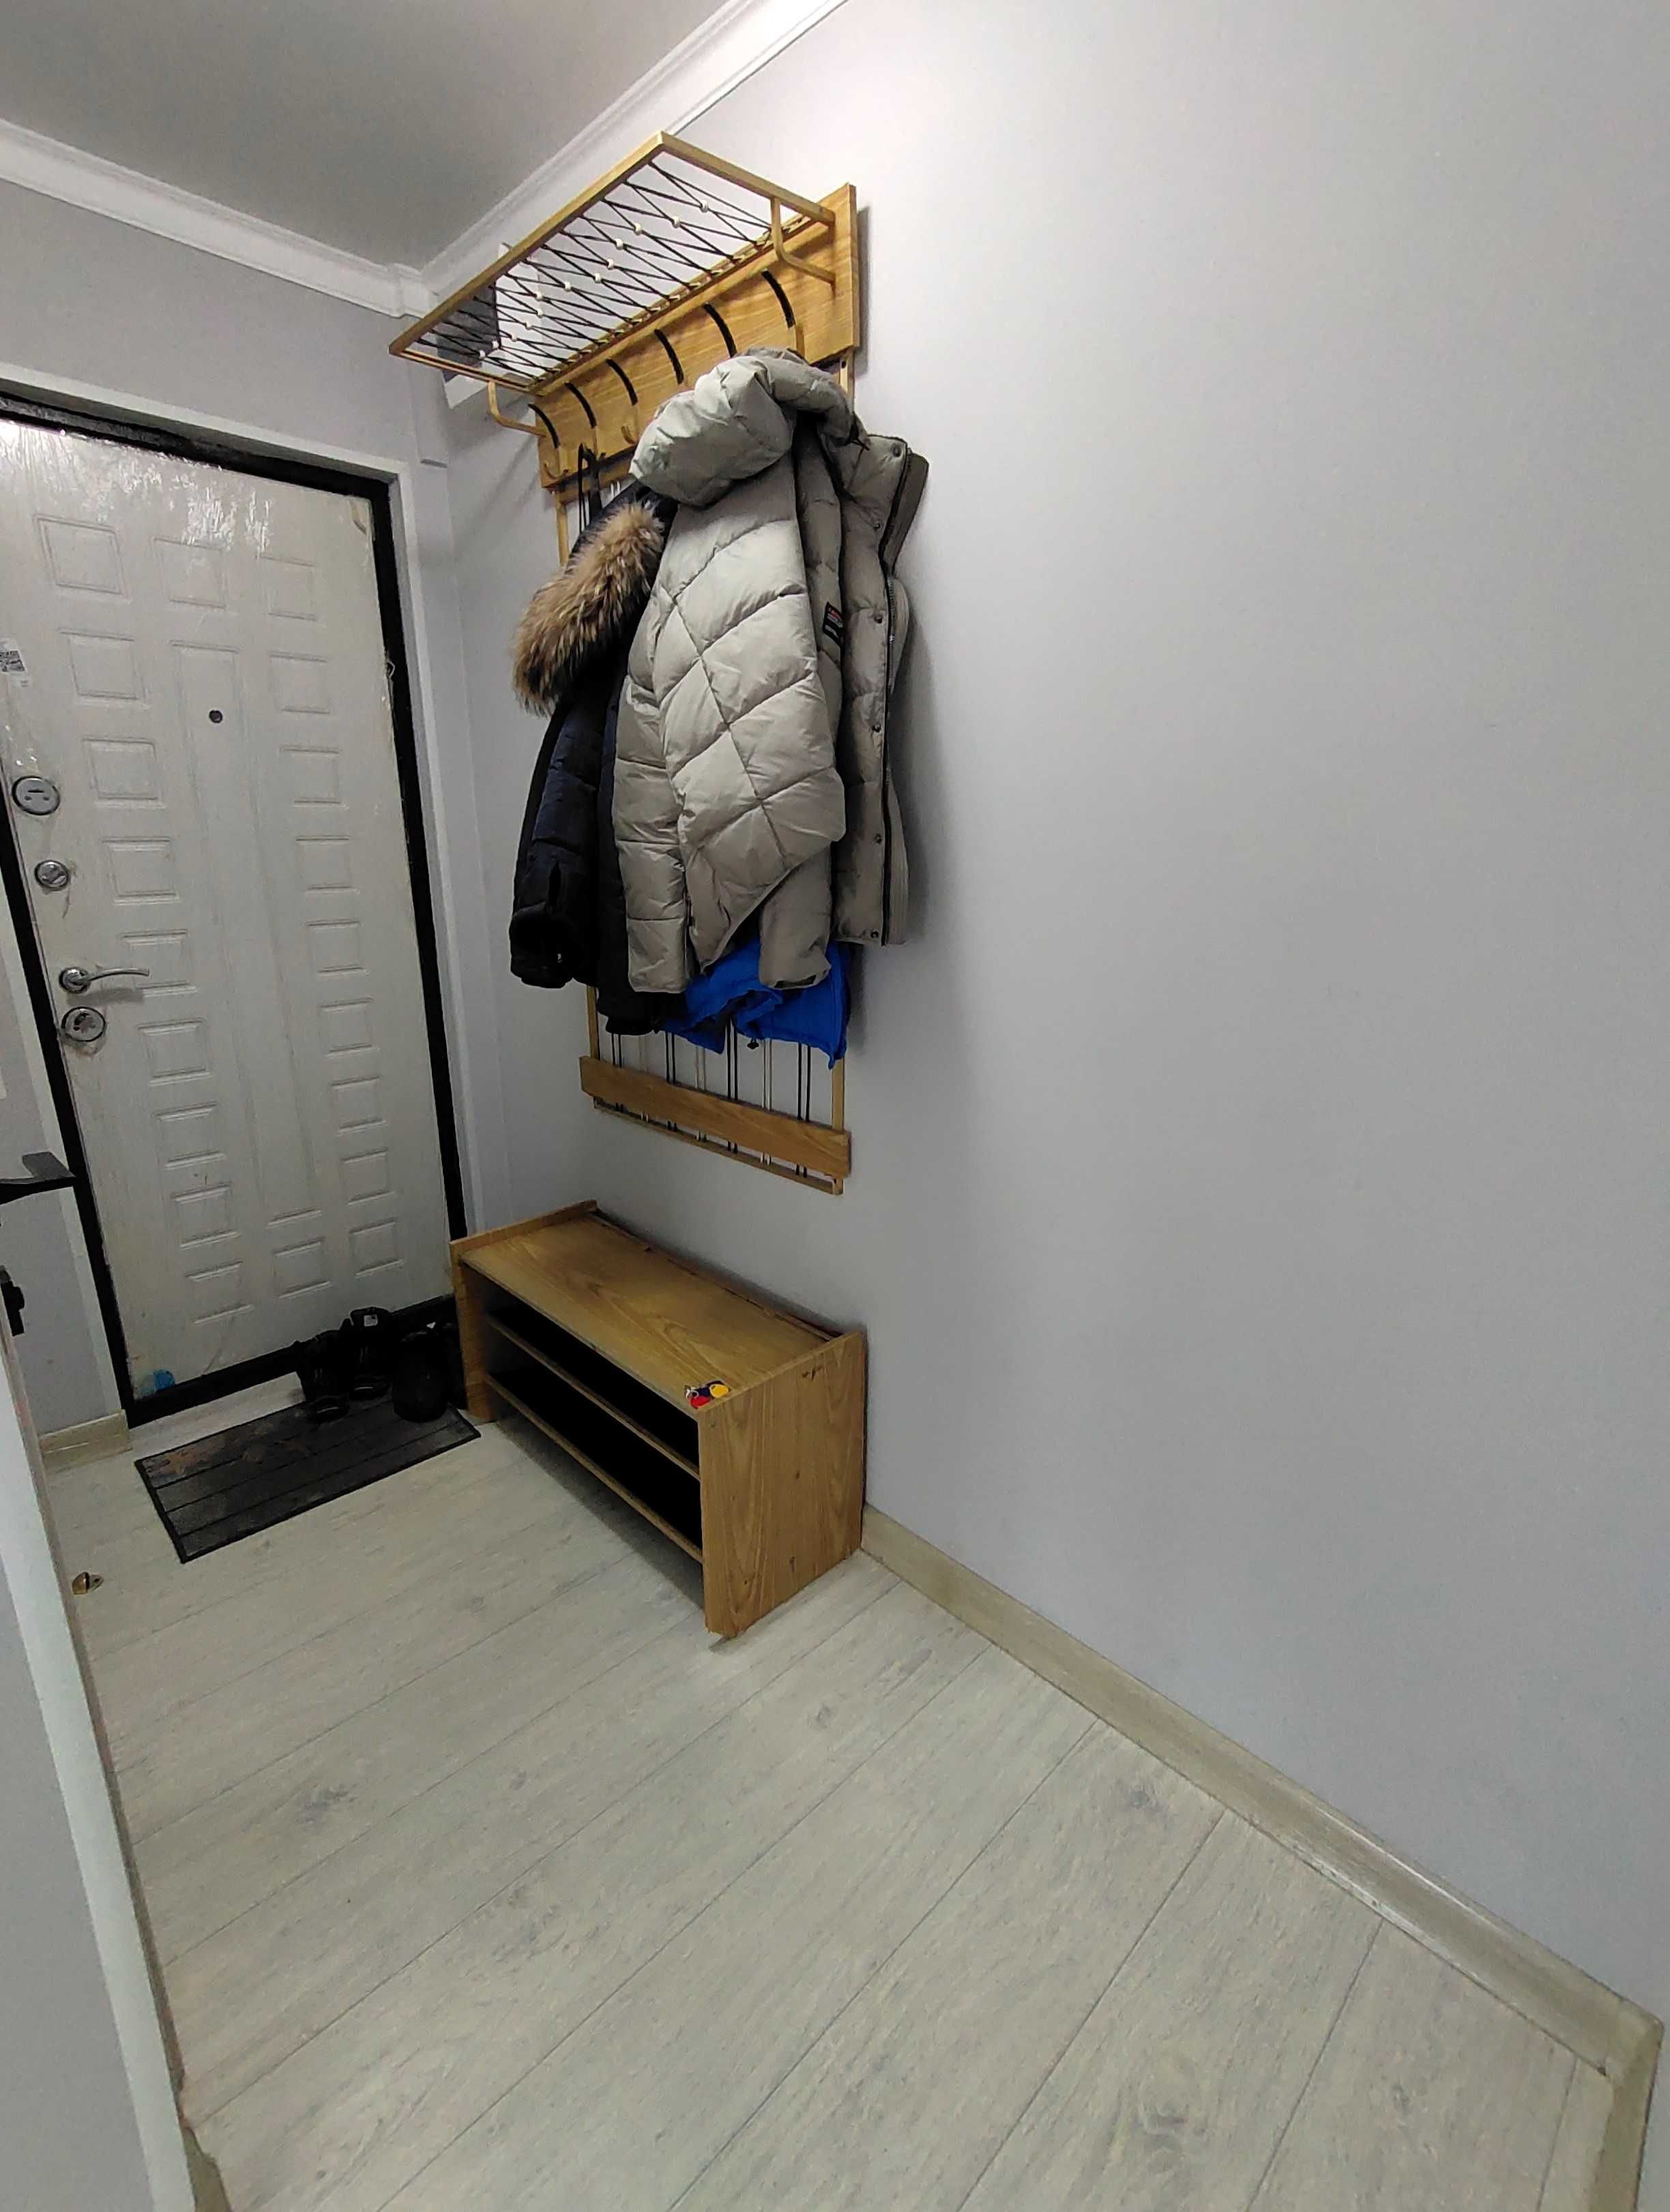 Продается 2-х комнатная квартира со свежим ремонтом по ул. Ержанова